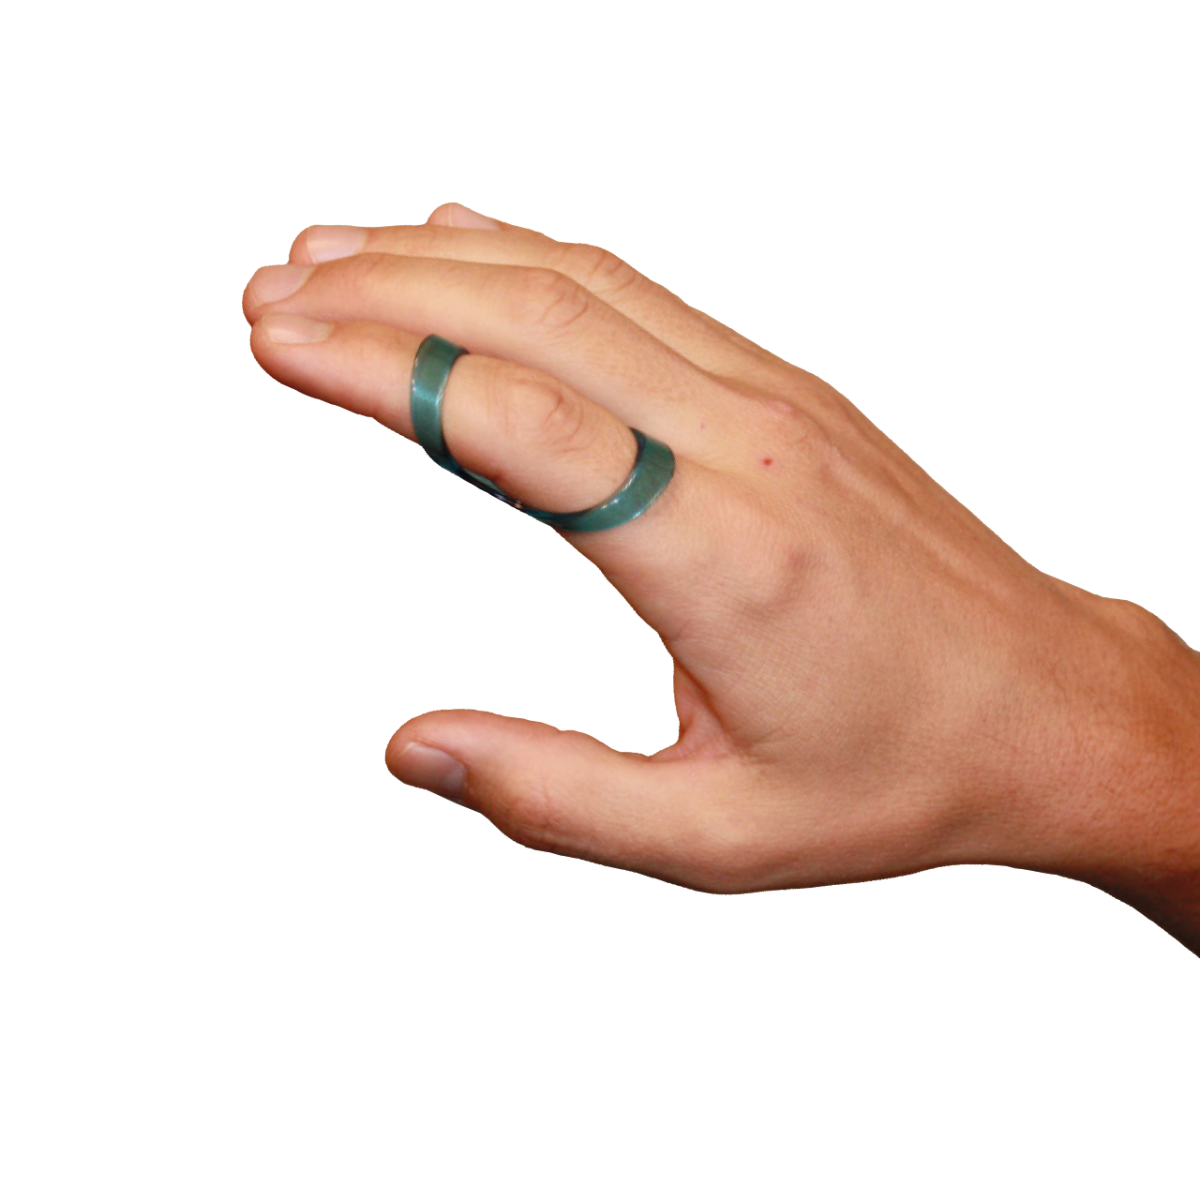 Fixační ortéza na prst krátká transparentní CATELL, vel. 25, C5180*25